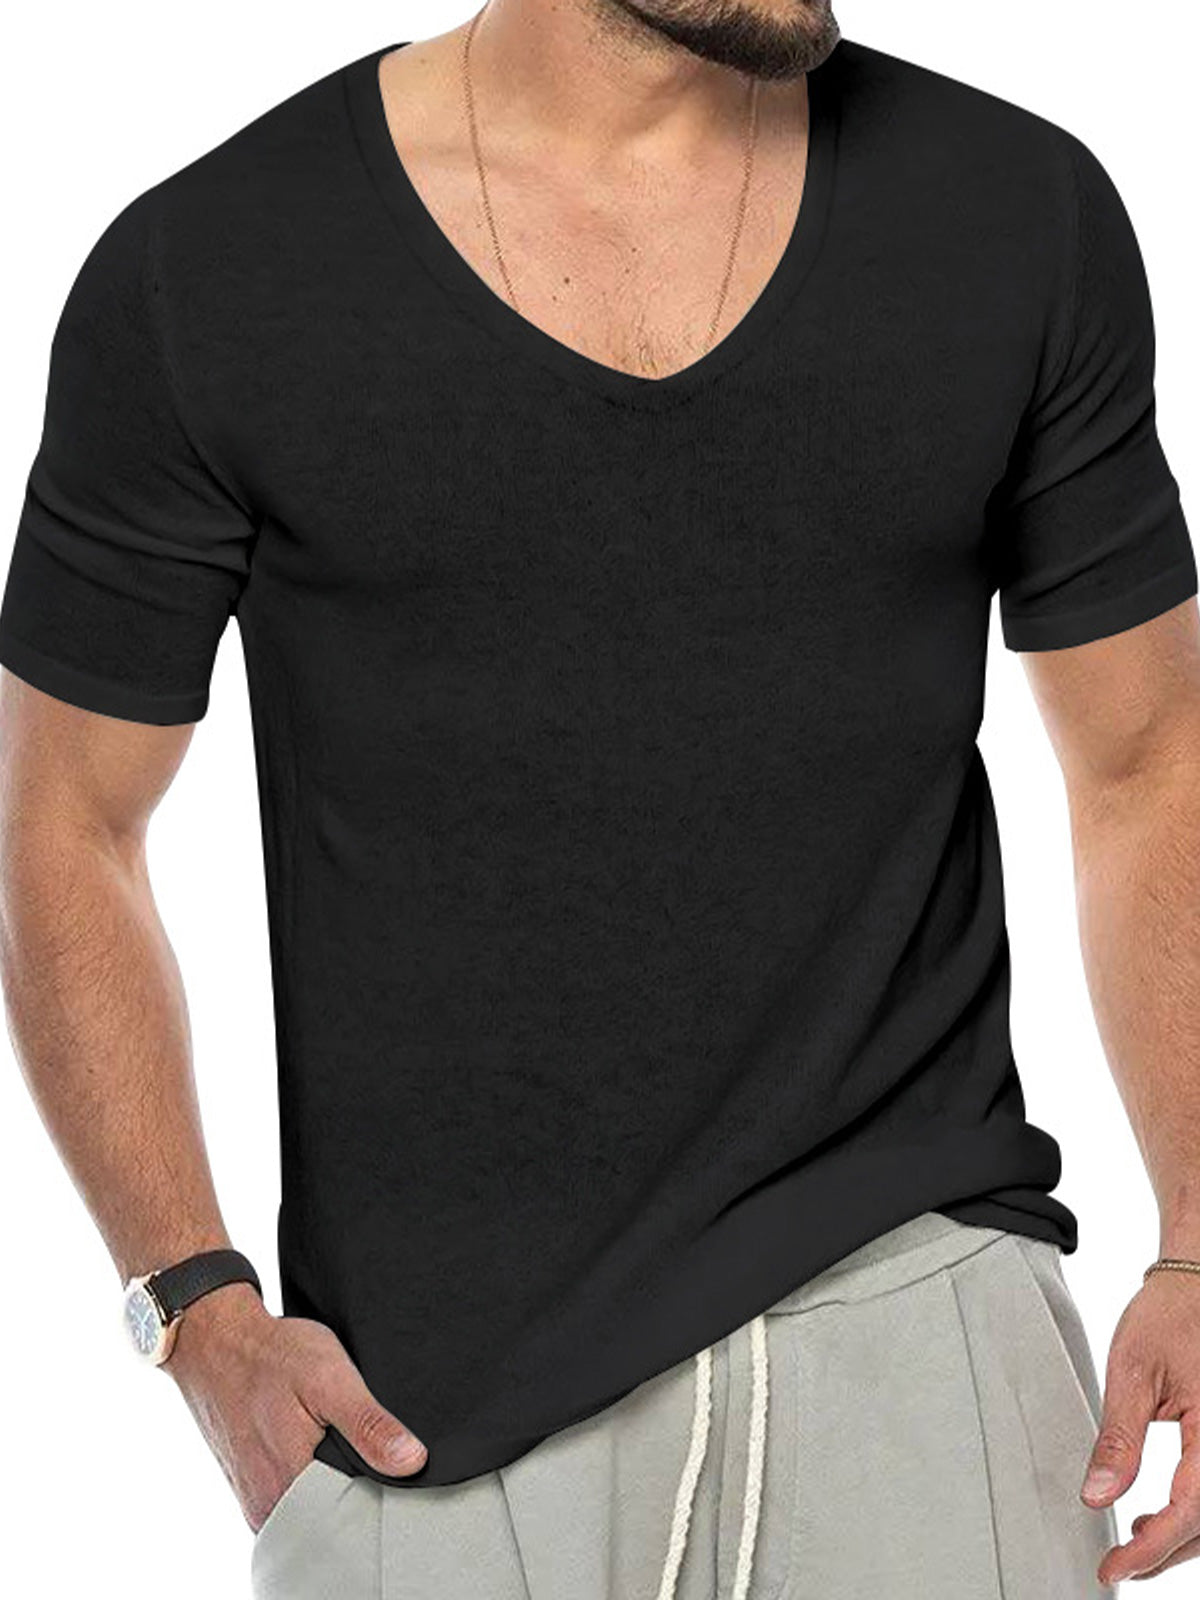 Men's Breathable V-Neck Short Sleeve T-Shirt